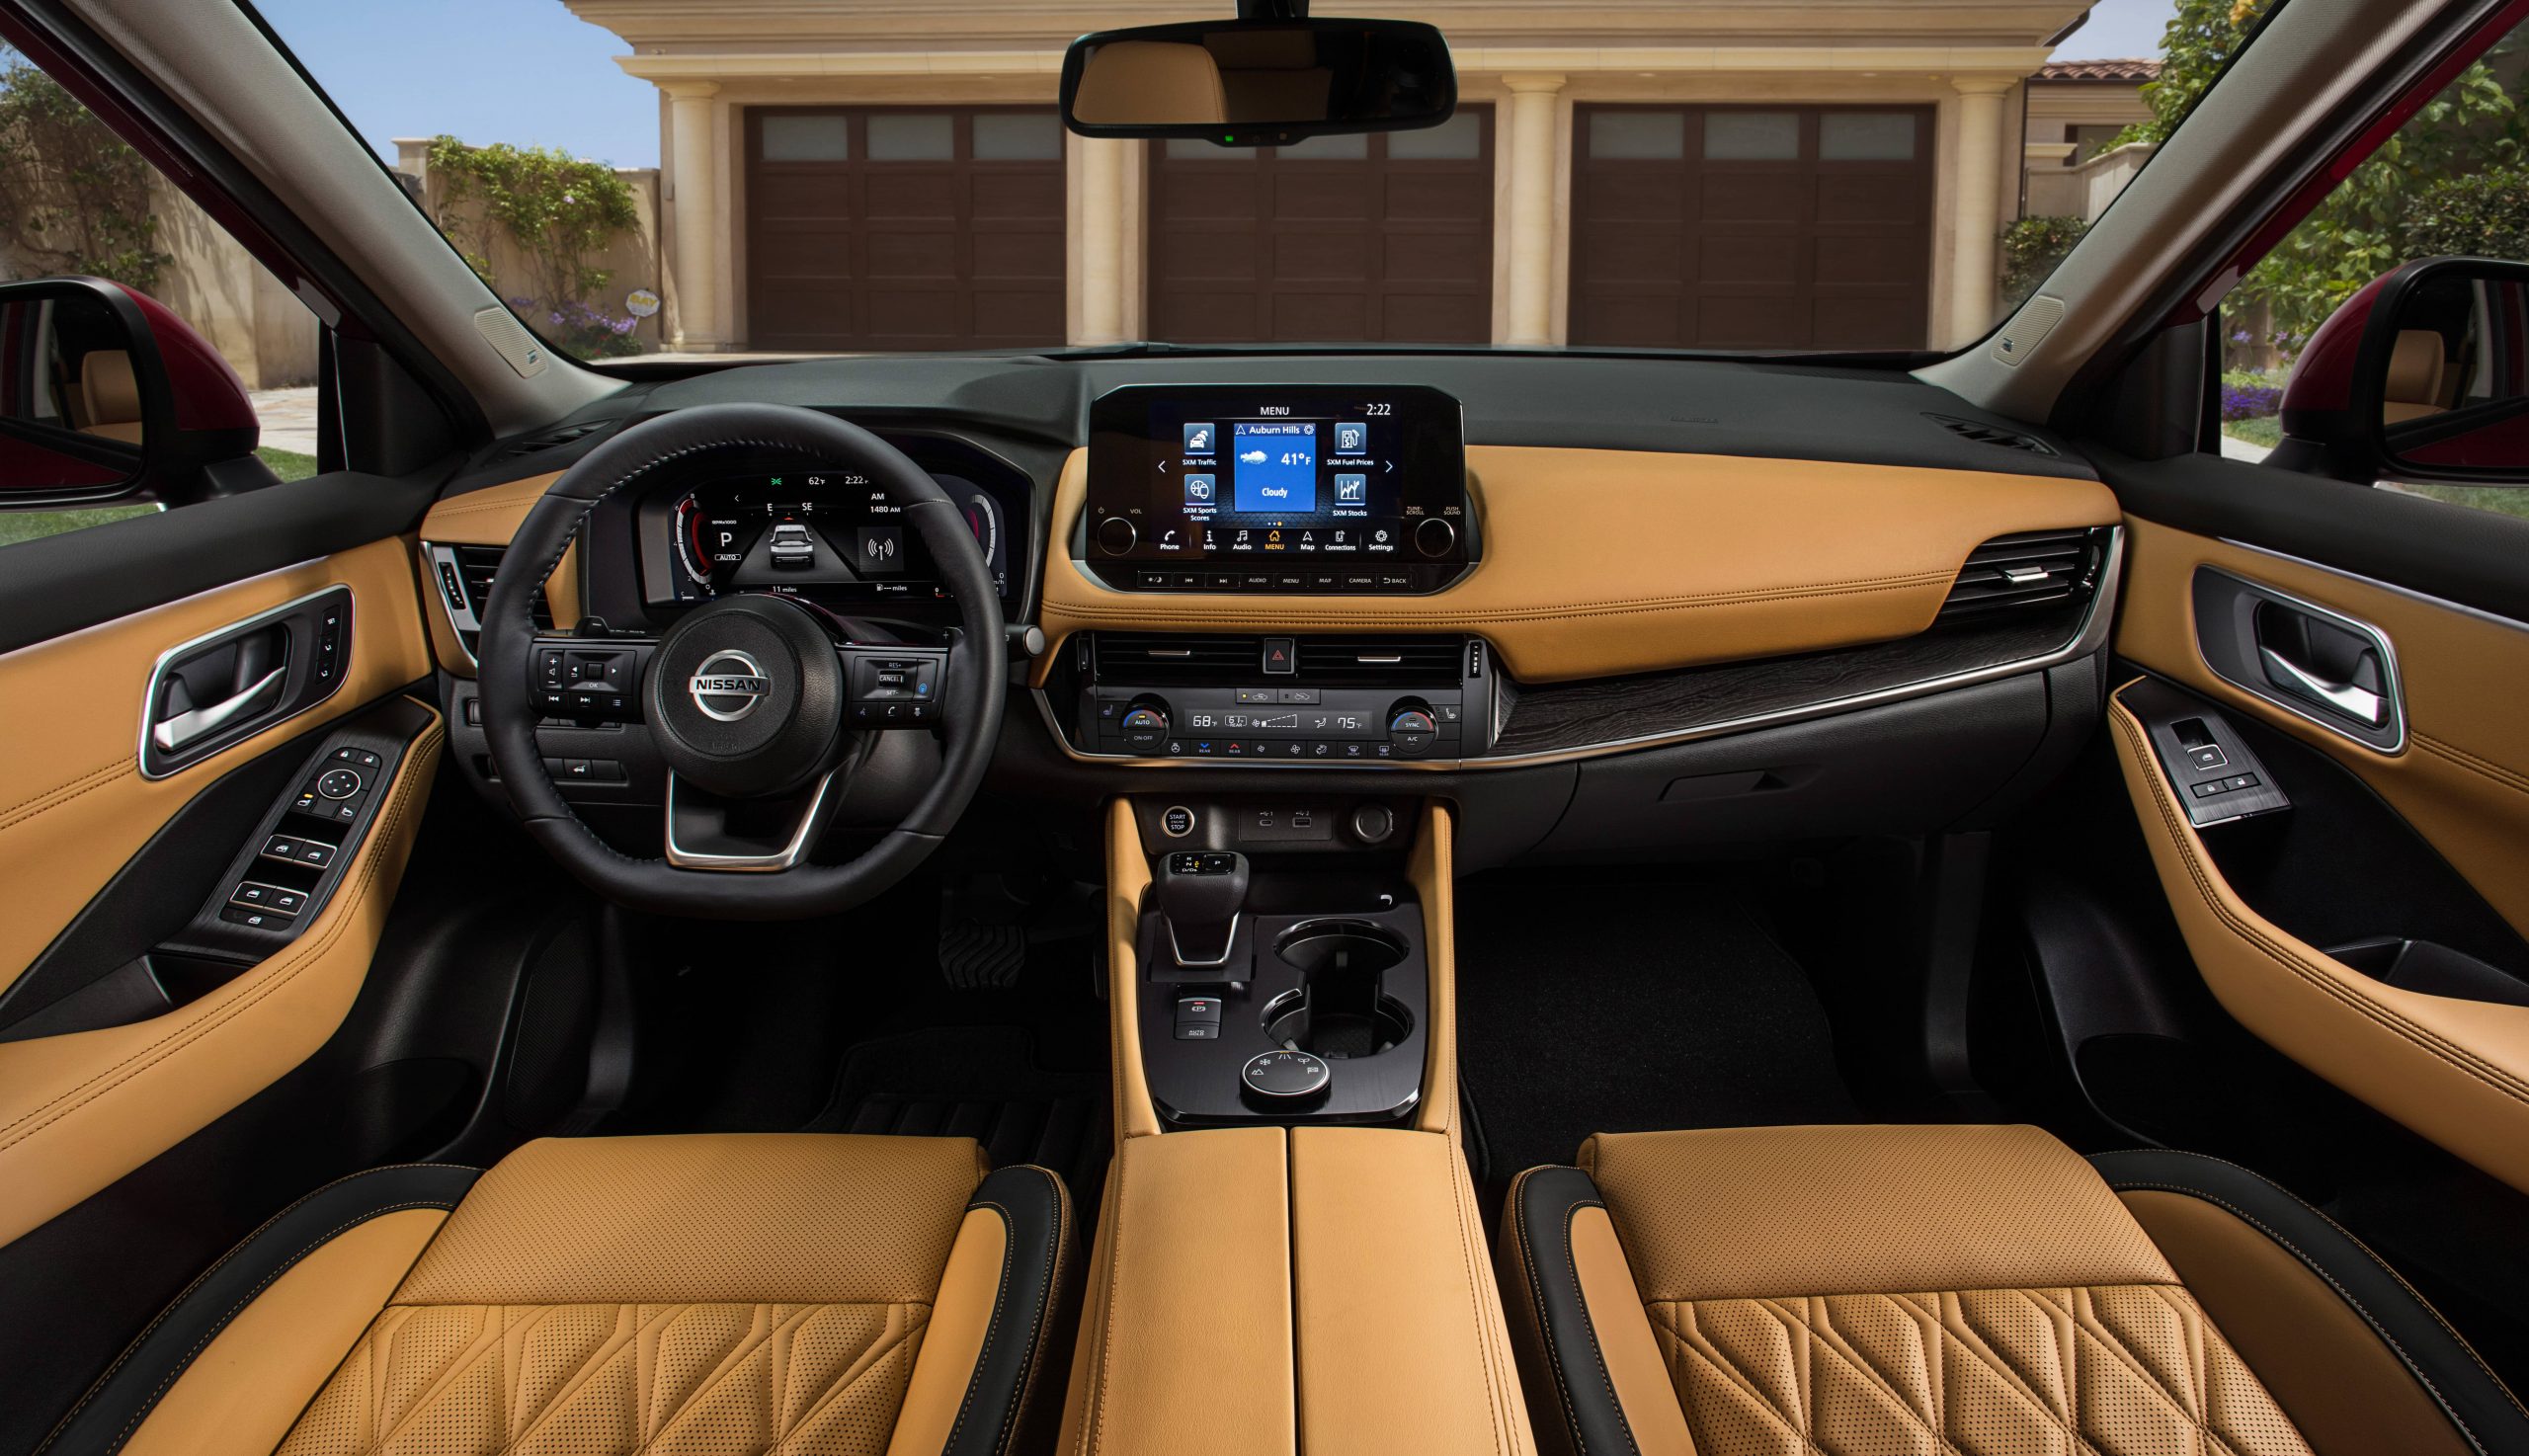 habitacle avant du Nissan Rogue 2021, sièges en cuir beige, comprenant l’écran tactile Nissan Connect de 8 pouces et toutes ses commodités sur le tableau de bord